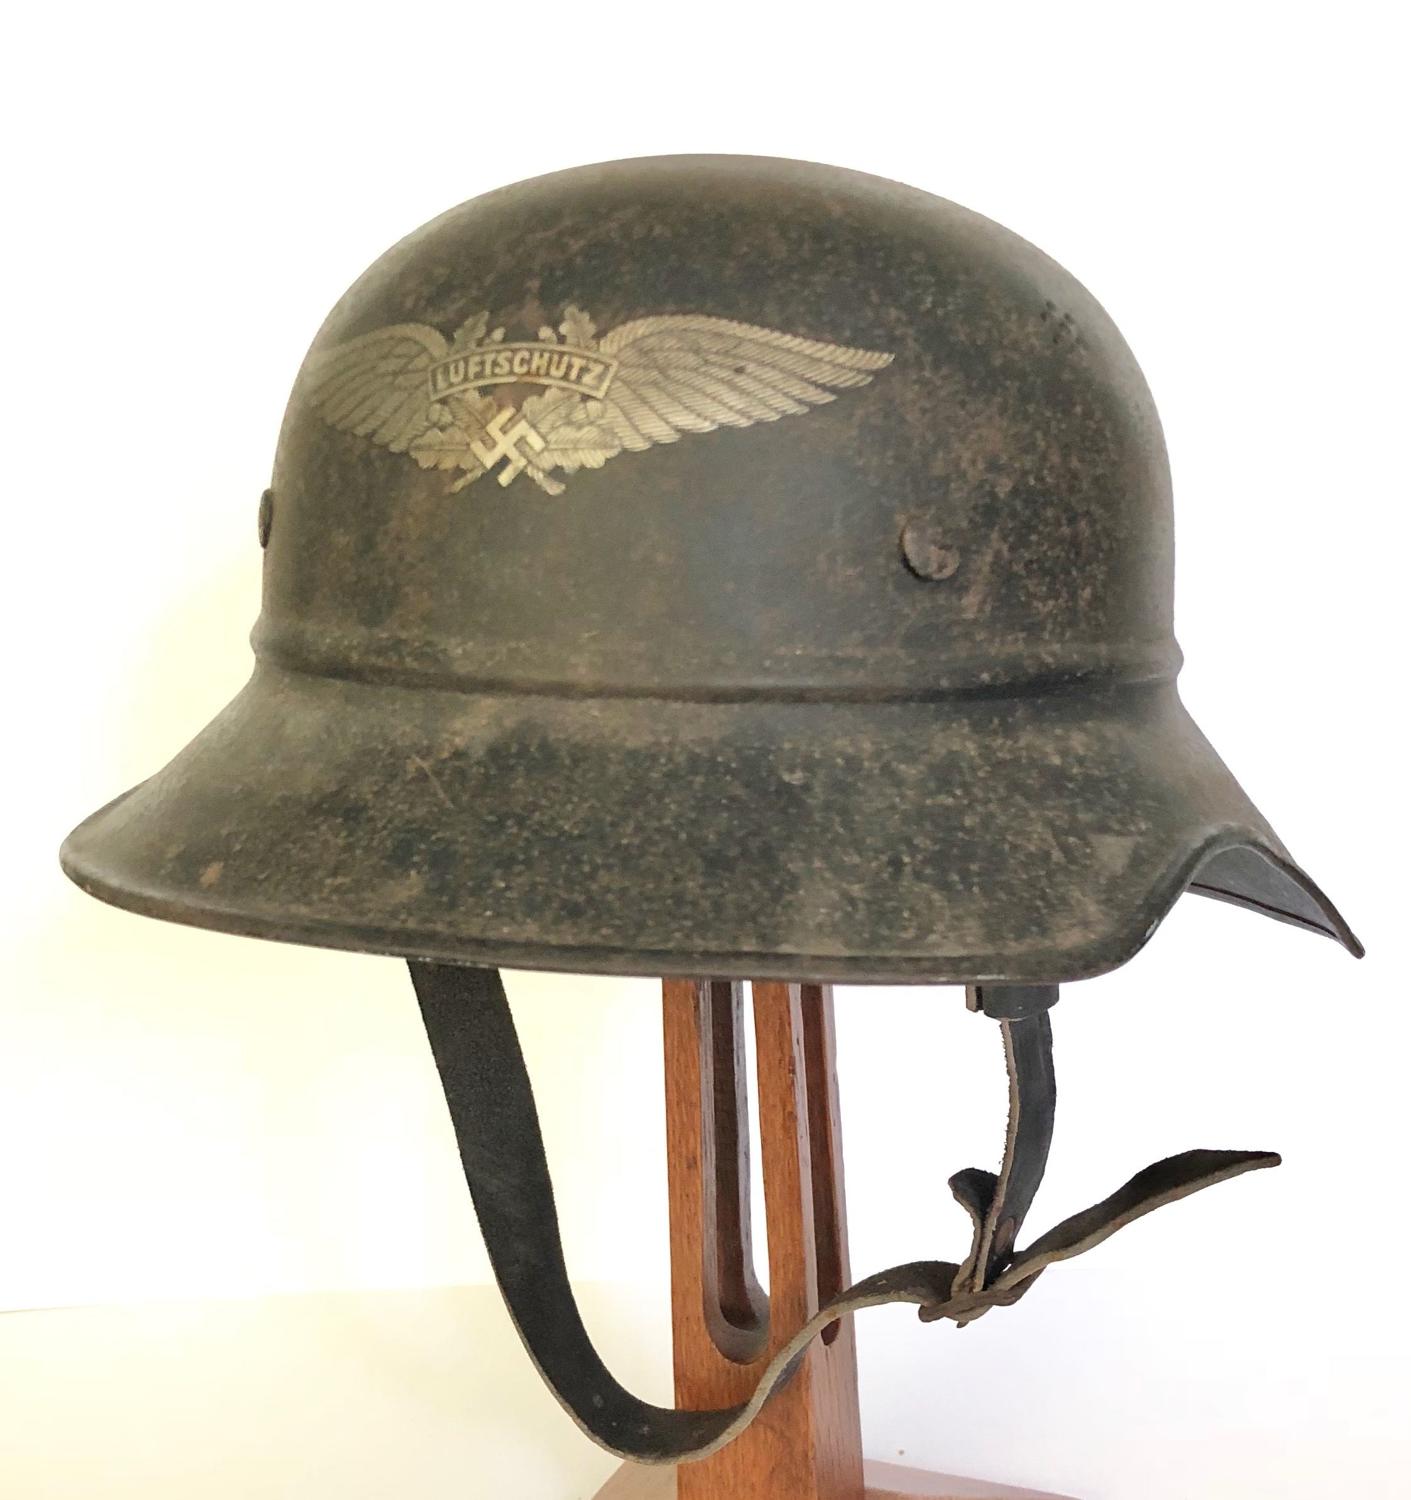 German Third Reich WW2 Luftschutz Shell Hemet.